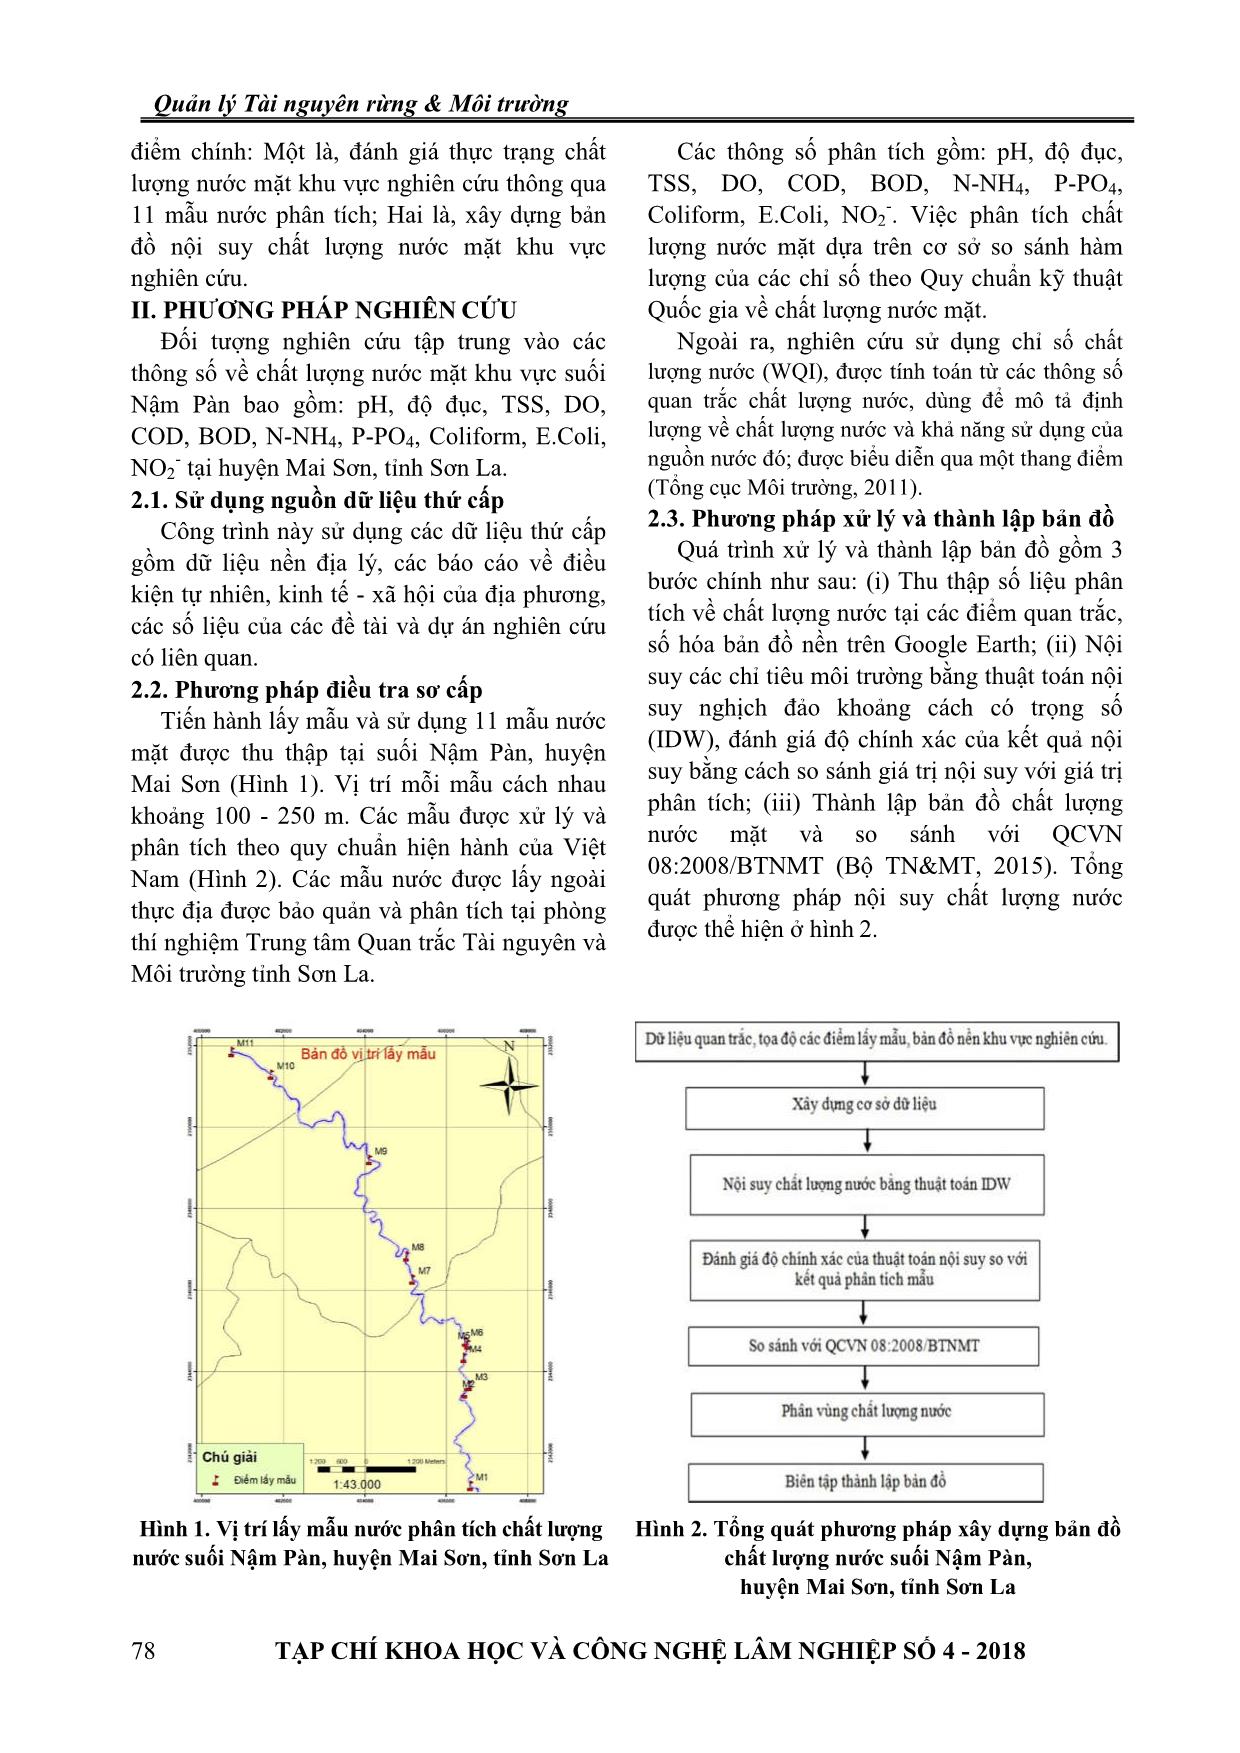 Ứng dụng GIS và thuật toán nội suy xây dựng bản đồ chất lượng nước suối Nậm Pàn chảy qua huyện Mai Sơn, tỉnh Sơn La trang 2